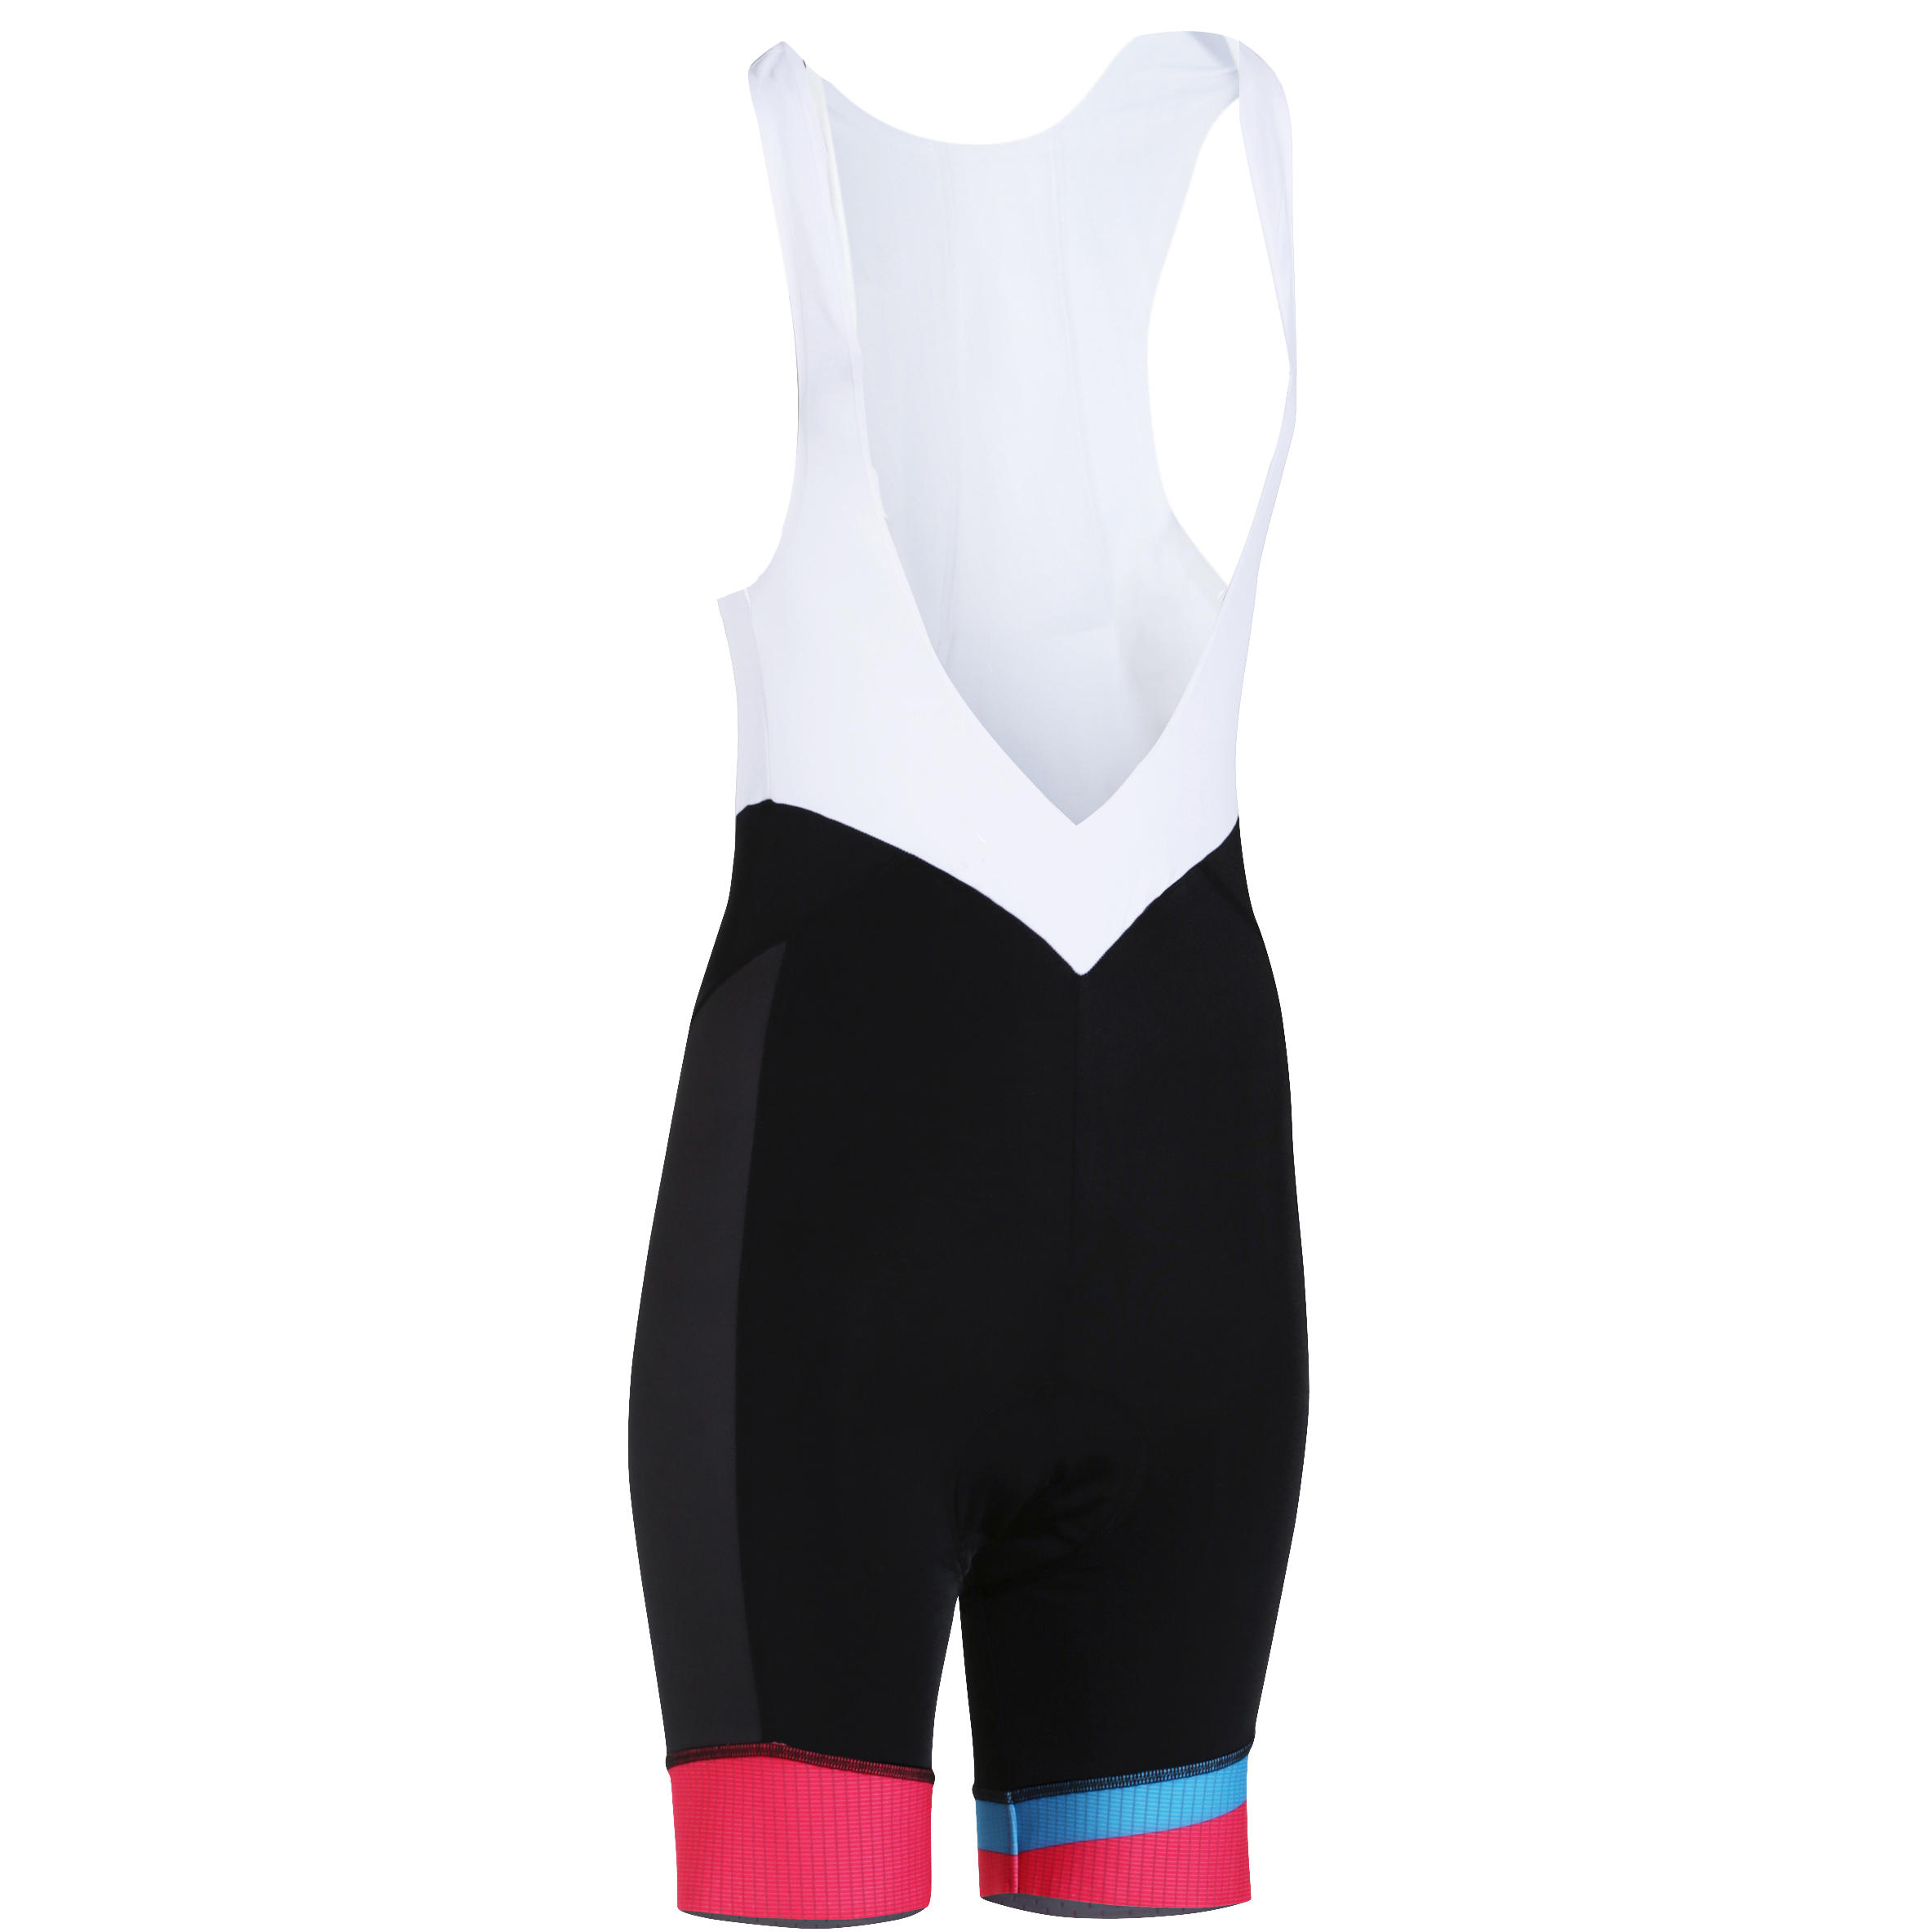 VAN RYSEL 700 Women's Cycling Bib Shorts - Black/Pink